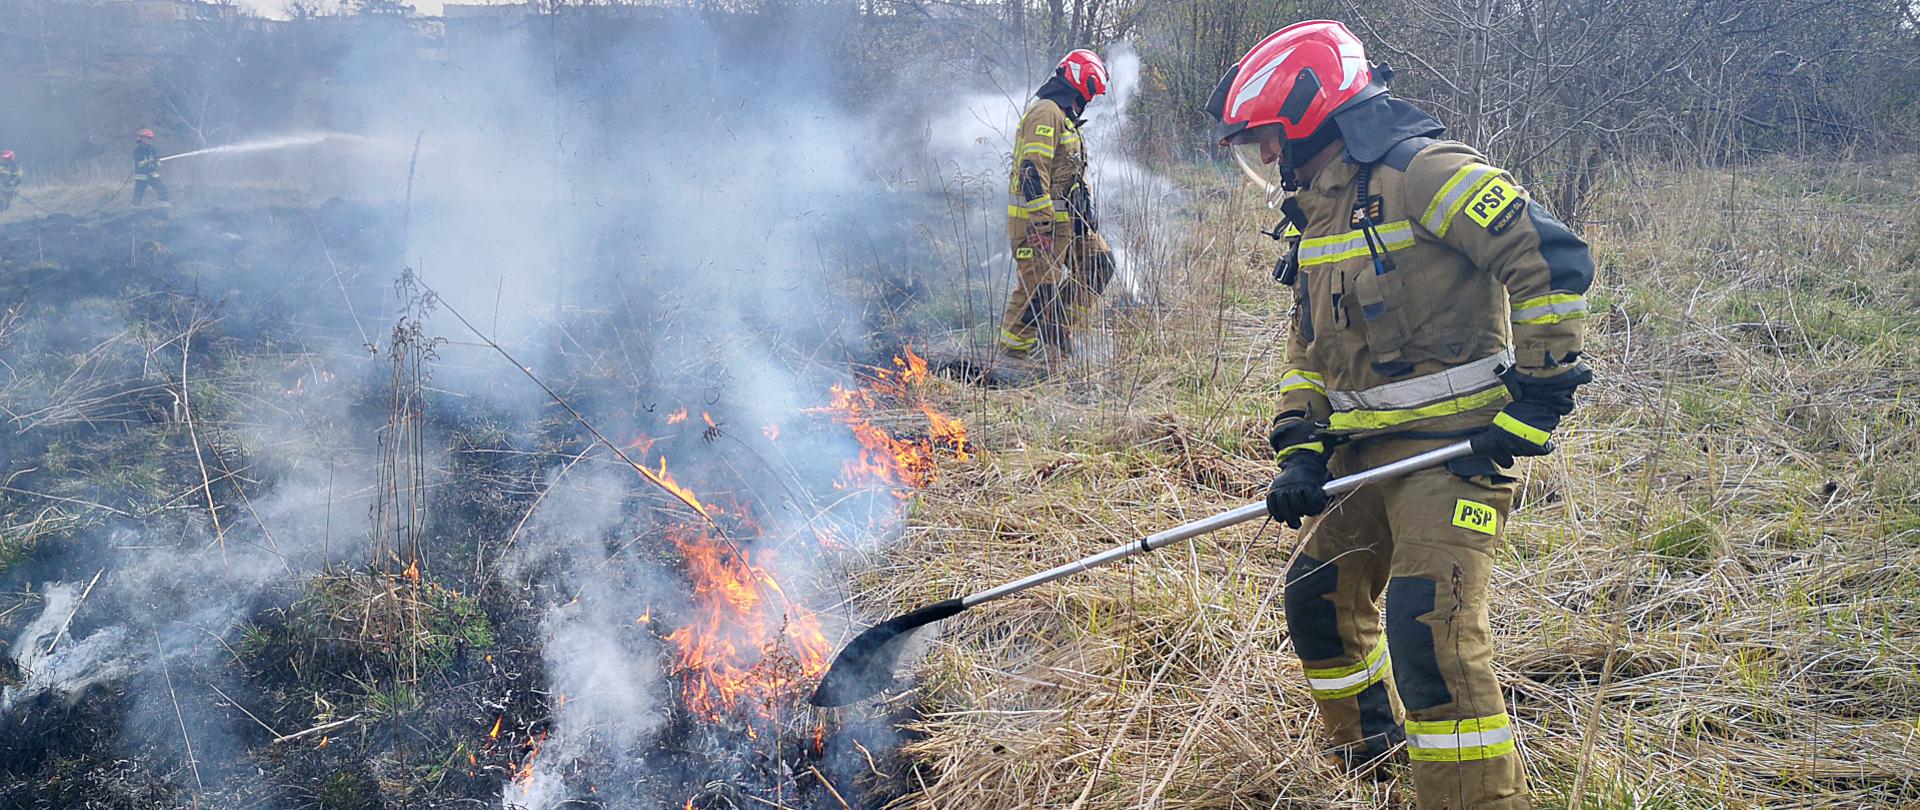 zdjęcie przedstawia pożar suchej trawy na łące. Dwóch strażaków w ubraniach specjalnych gasi pożar przy pomocy tłumic. W tle widać strażaków podający prąd gaśniczy na palącą się trawę.